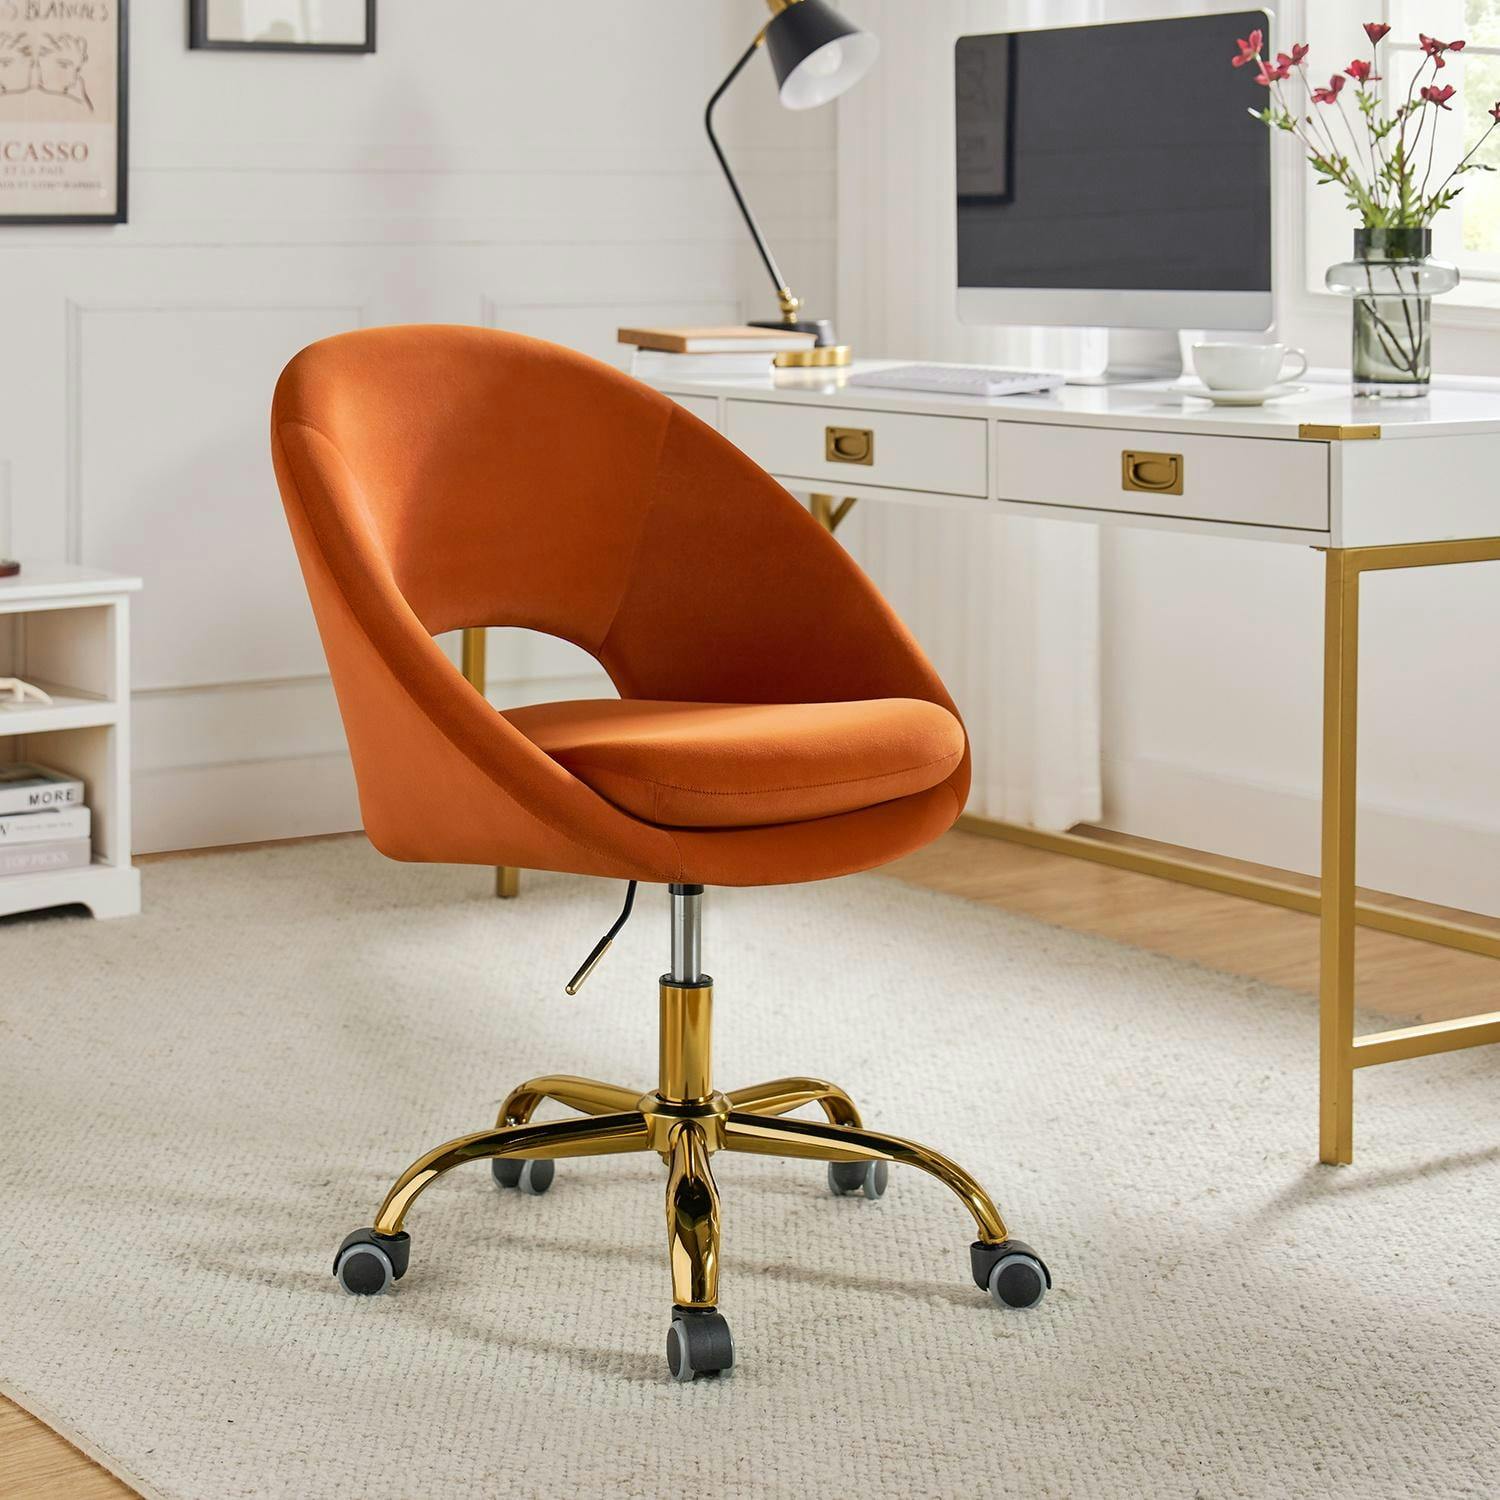 Ergonomic Velvet Swivel Task Chair in Orange with Metal and Wood Frame